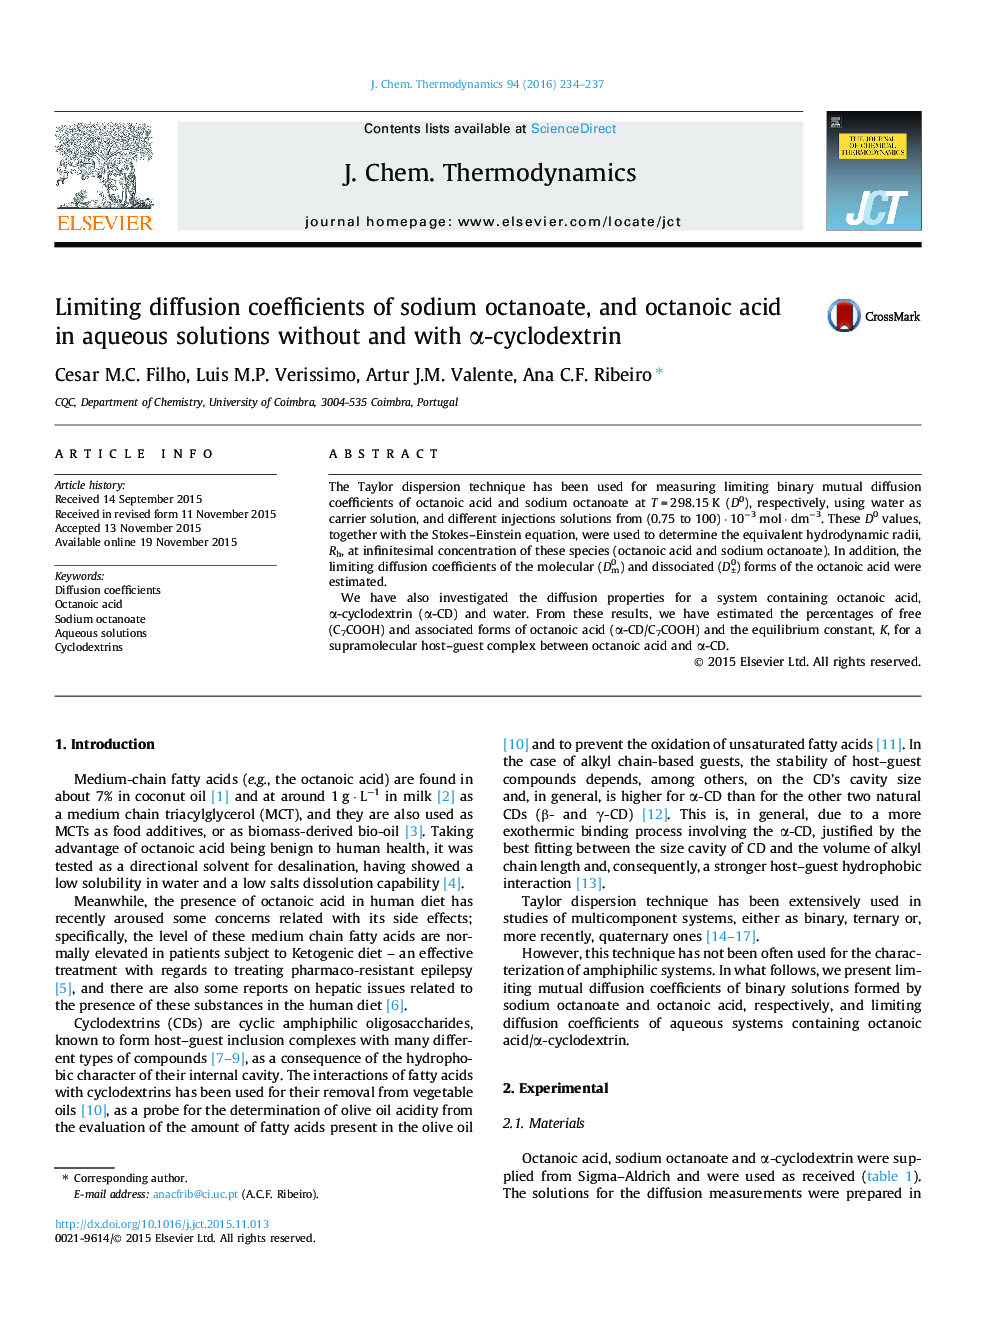 محدود کردن ضرایب انتشار octanoate سدیم و اسید octanoic در محلول های آبی بدون و با α سیکلودکسترین